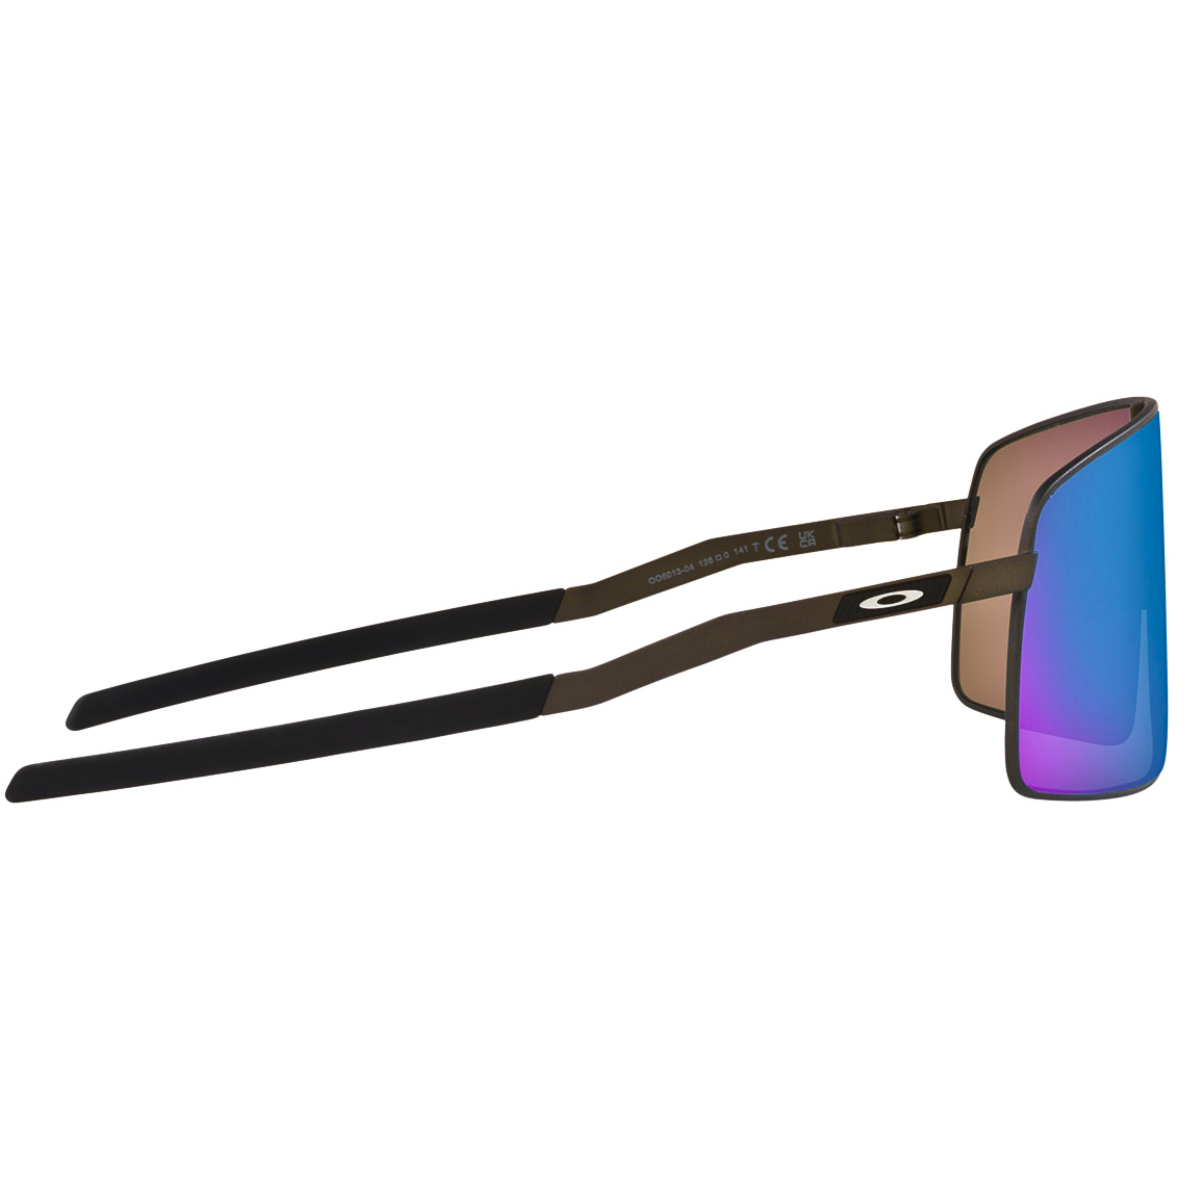 Oakley 0006013 SUTRO TI Satin Lead Prizm Sapphire Sunglasses - Only Prepaid Order